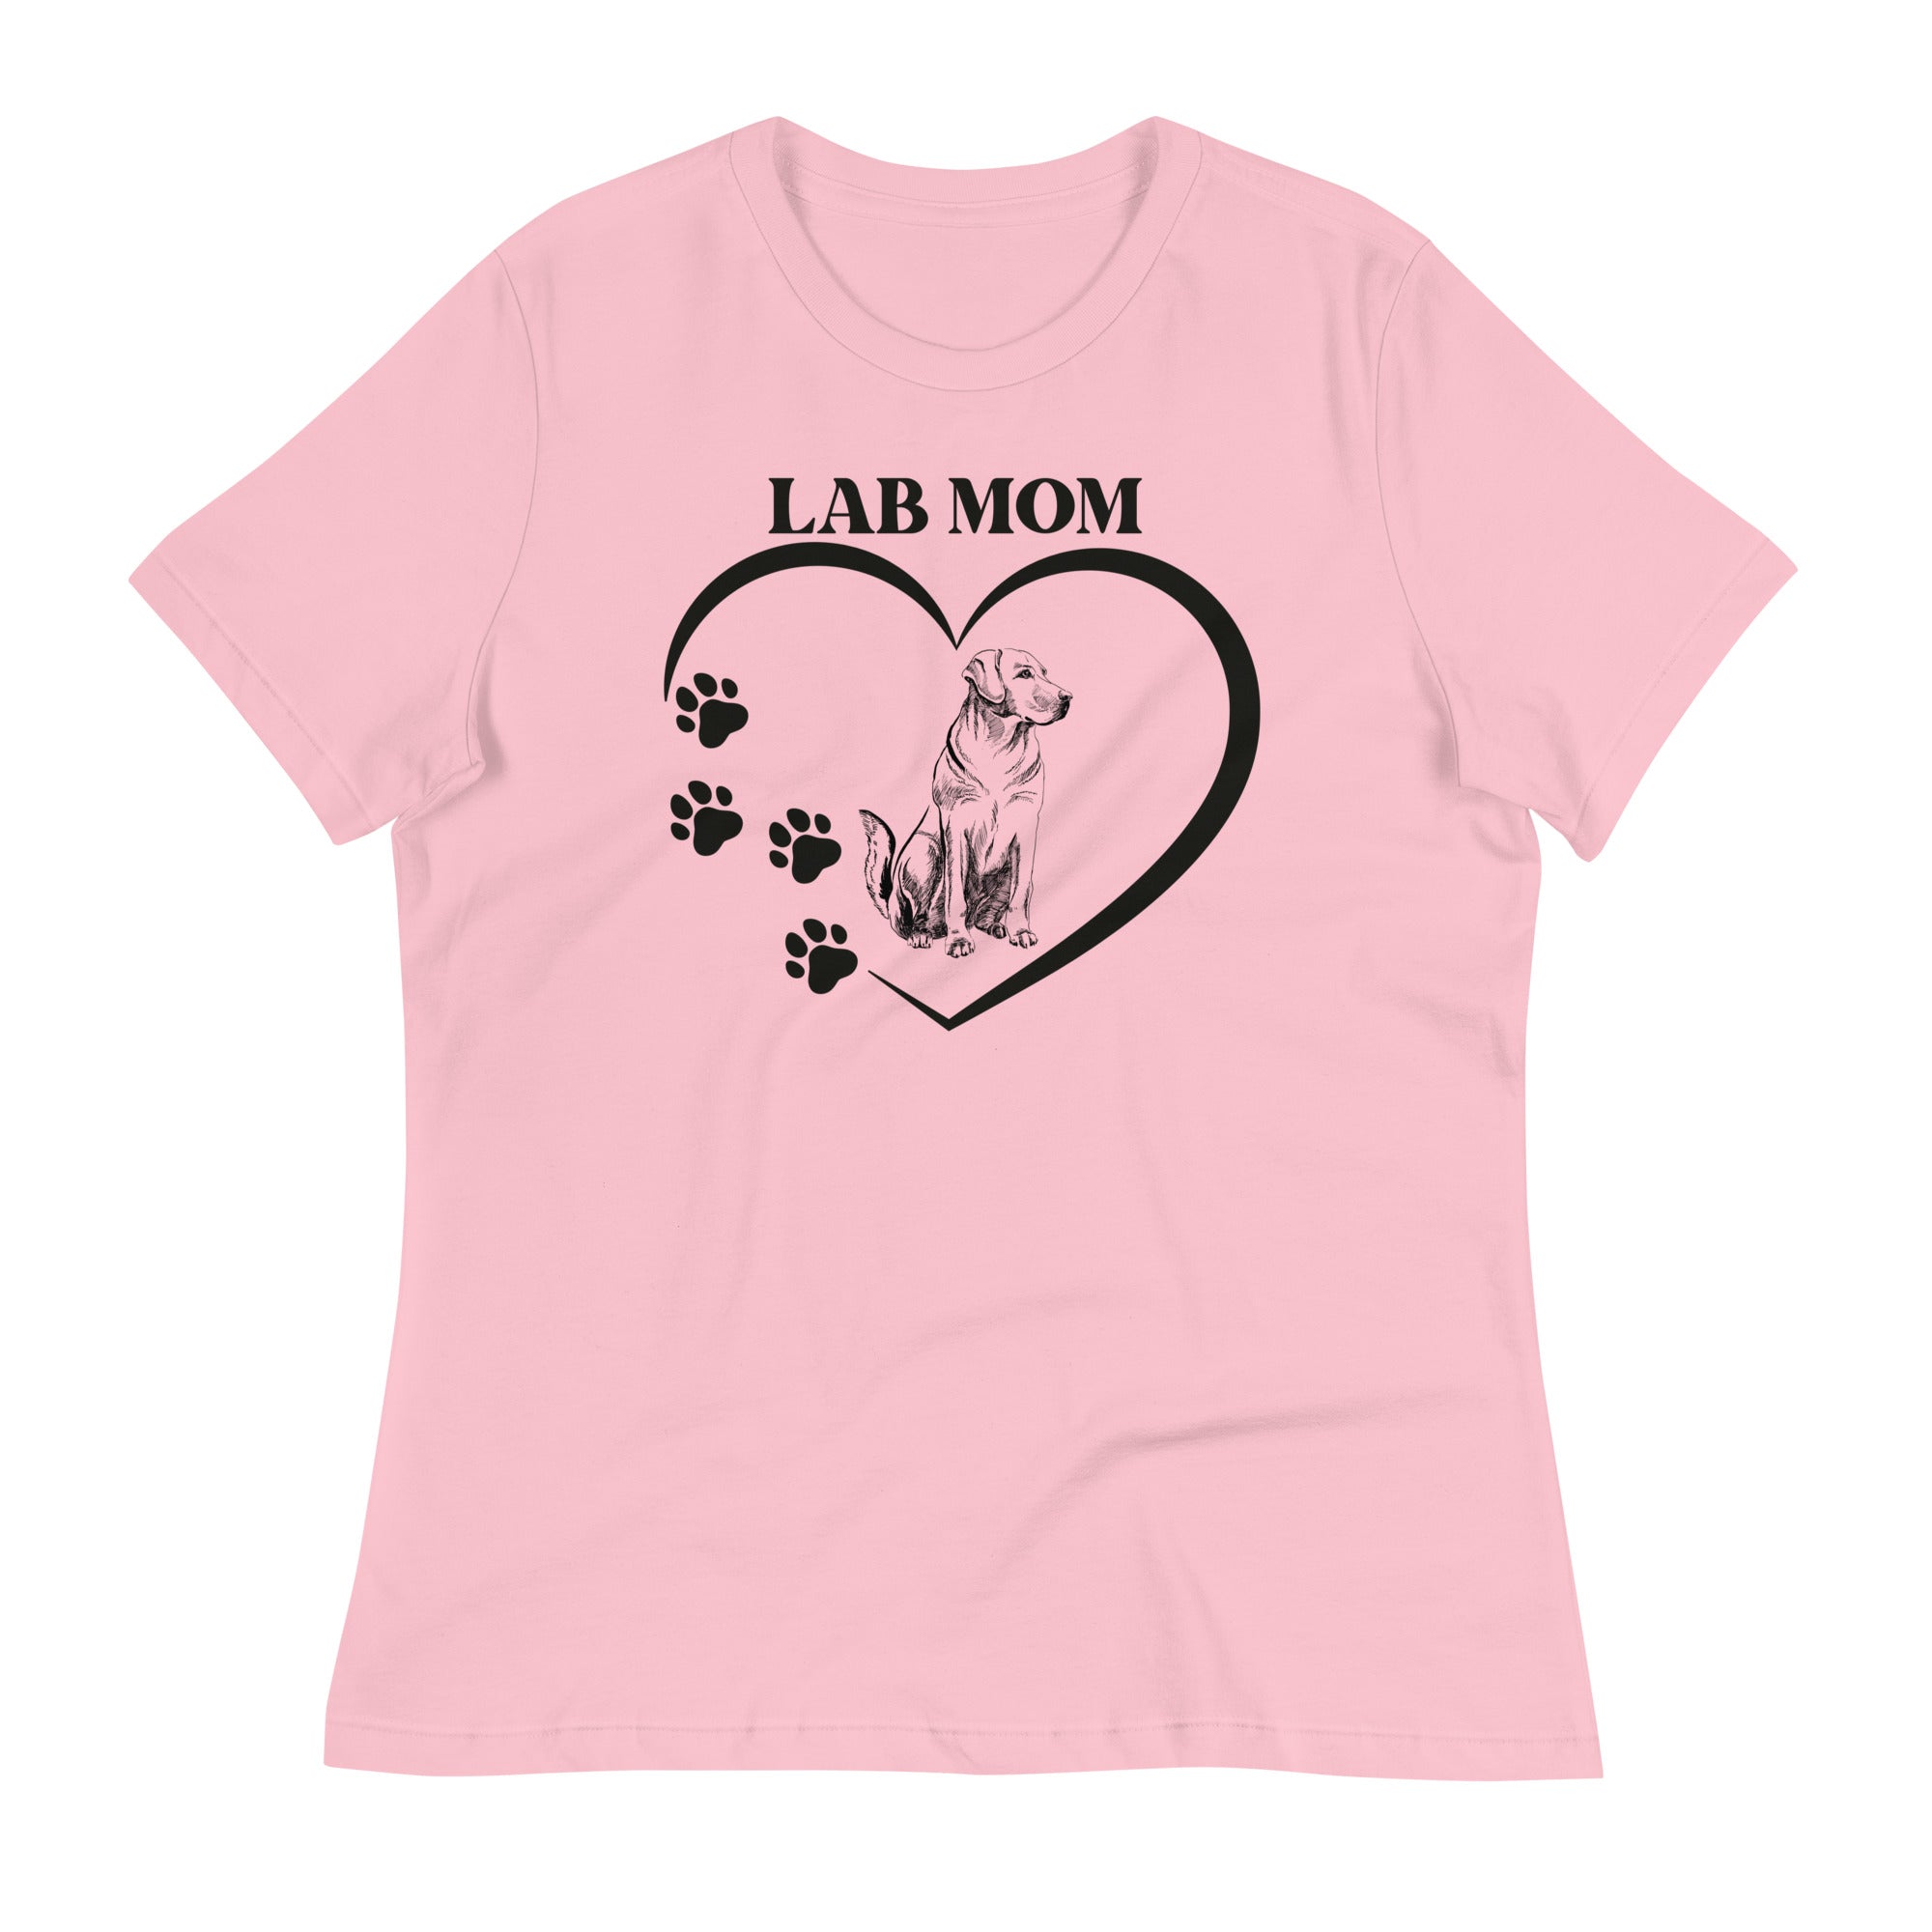 Lab mom dog print tees for women's fashion